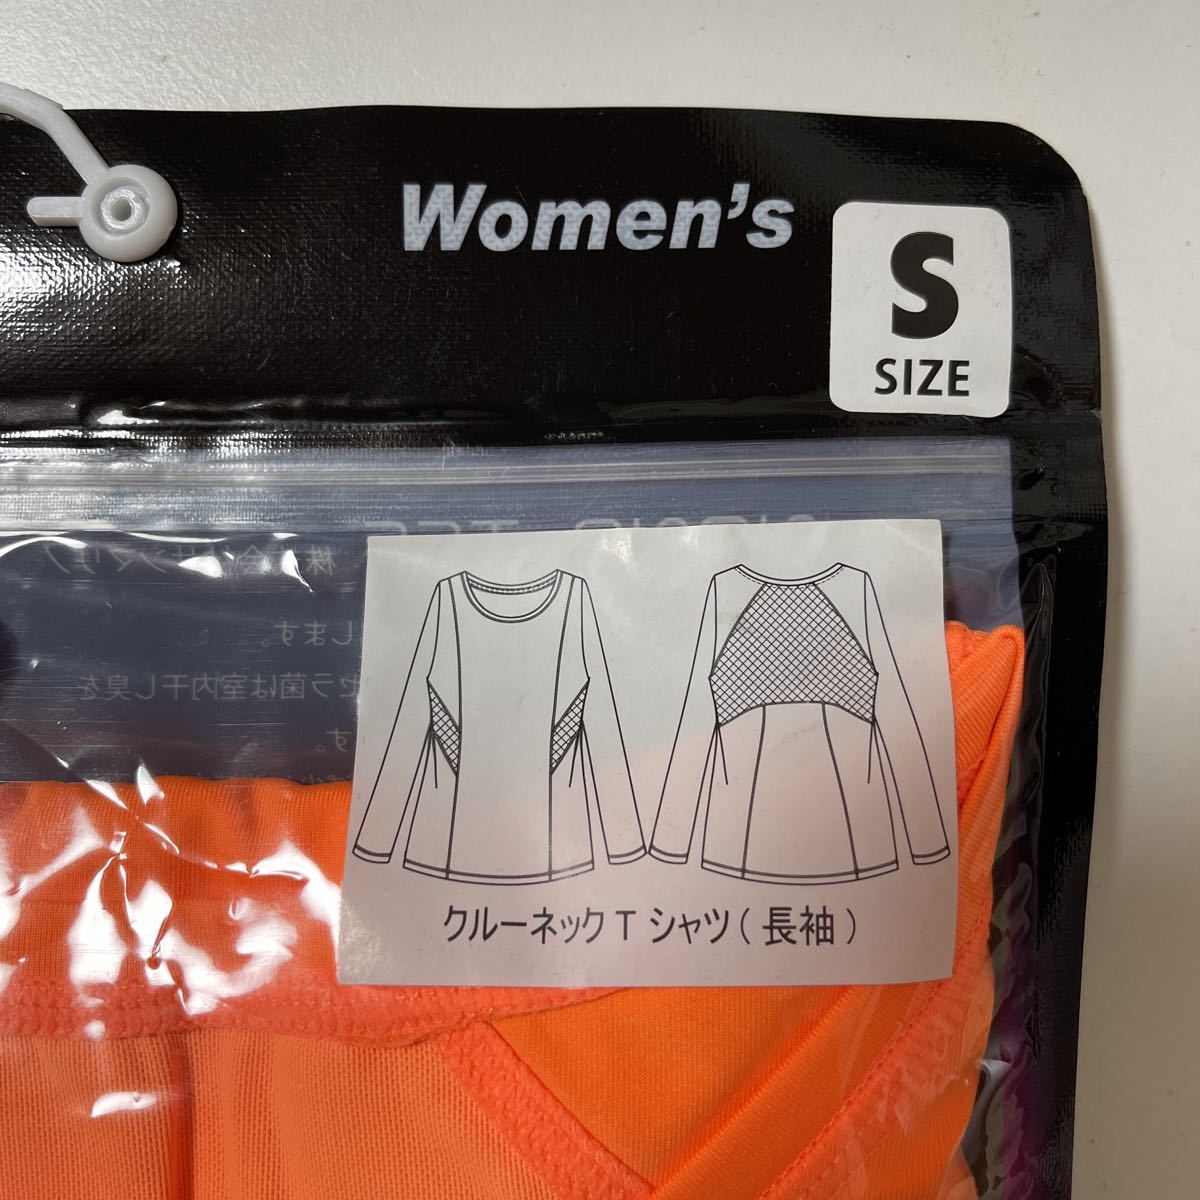 AXF axisfirm женский вырез лодочкой футболка длинный рукав размер S orange 